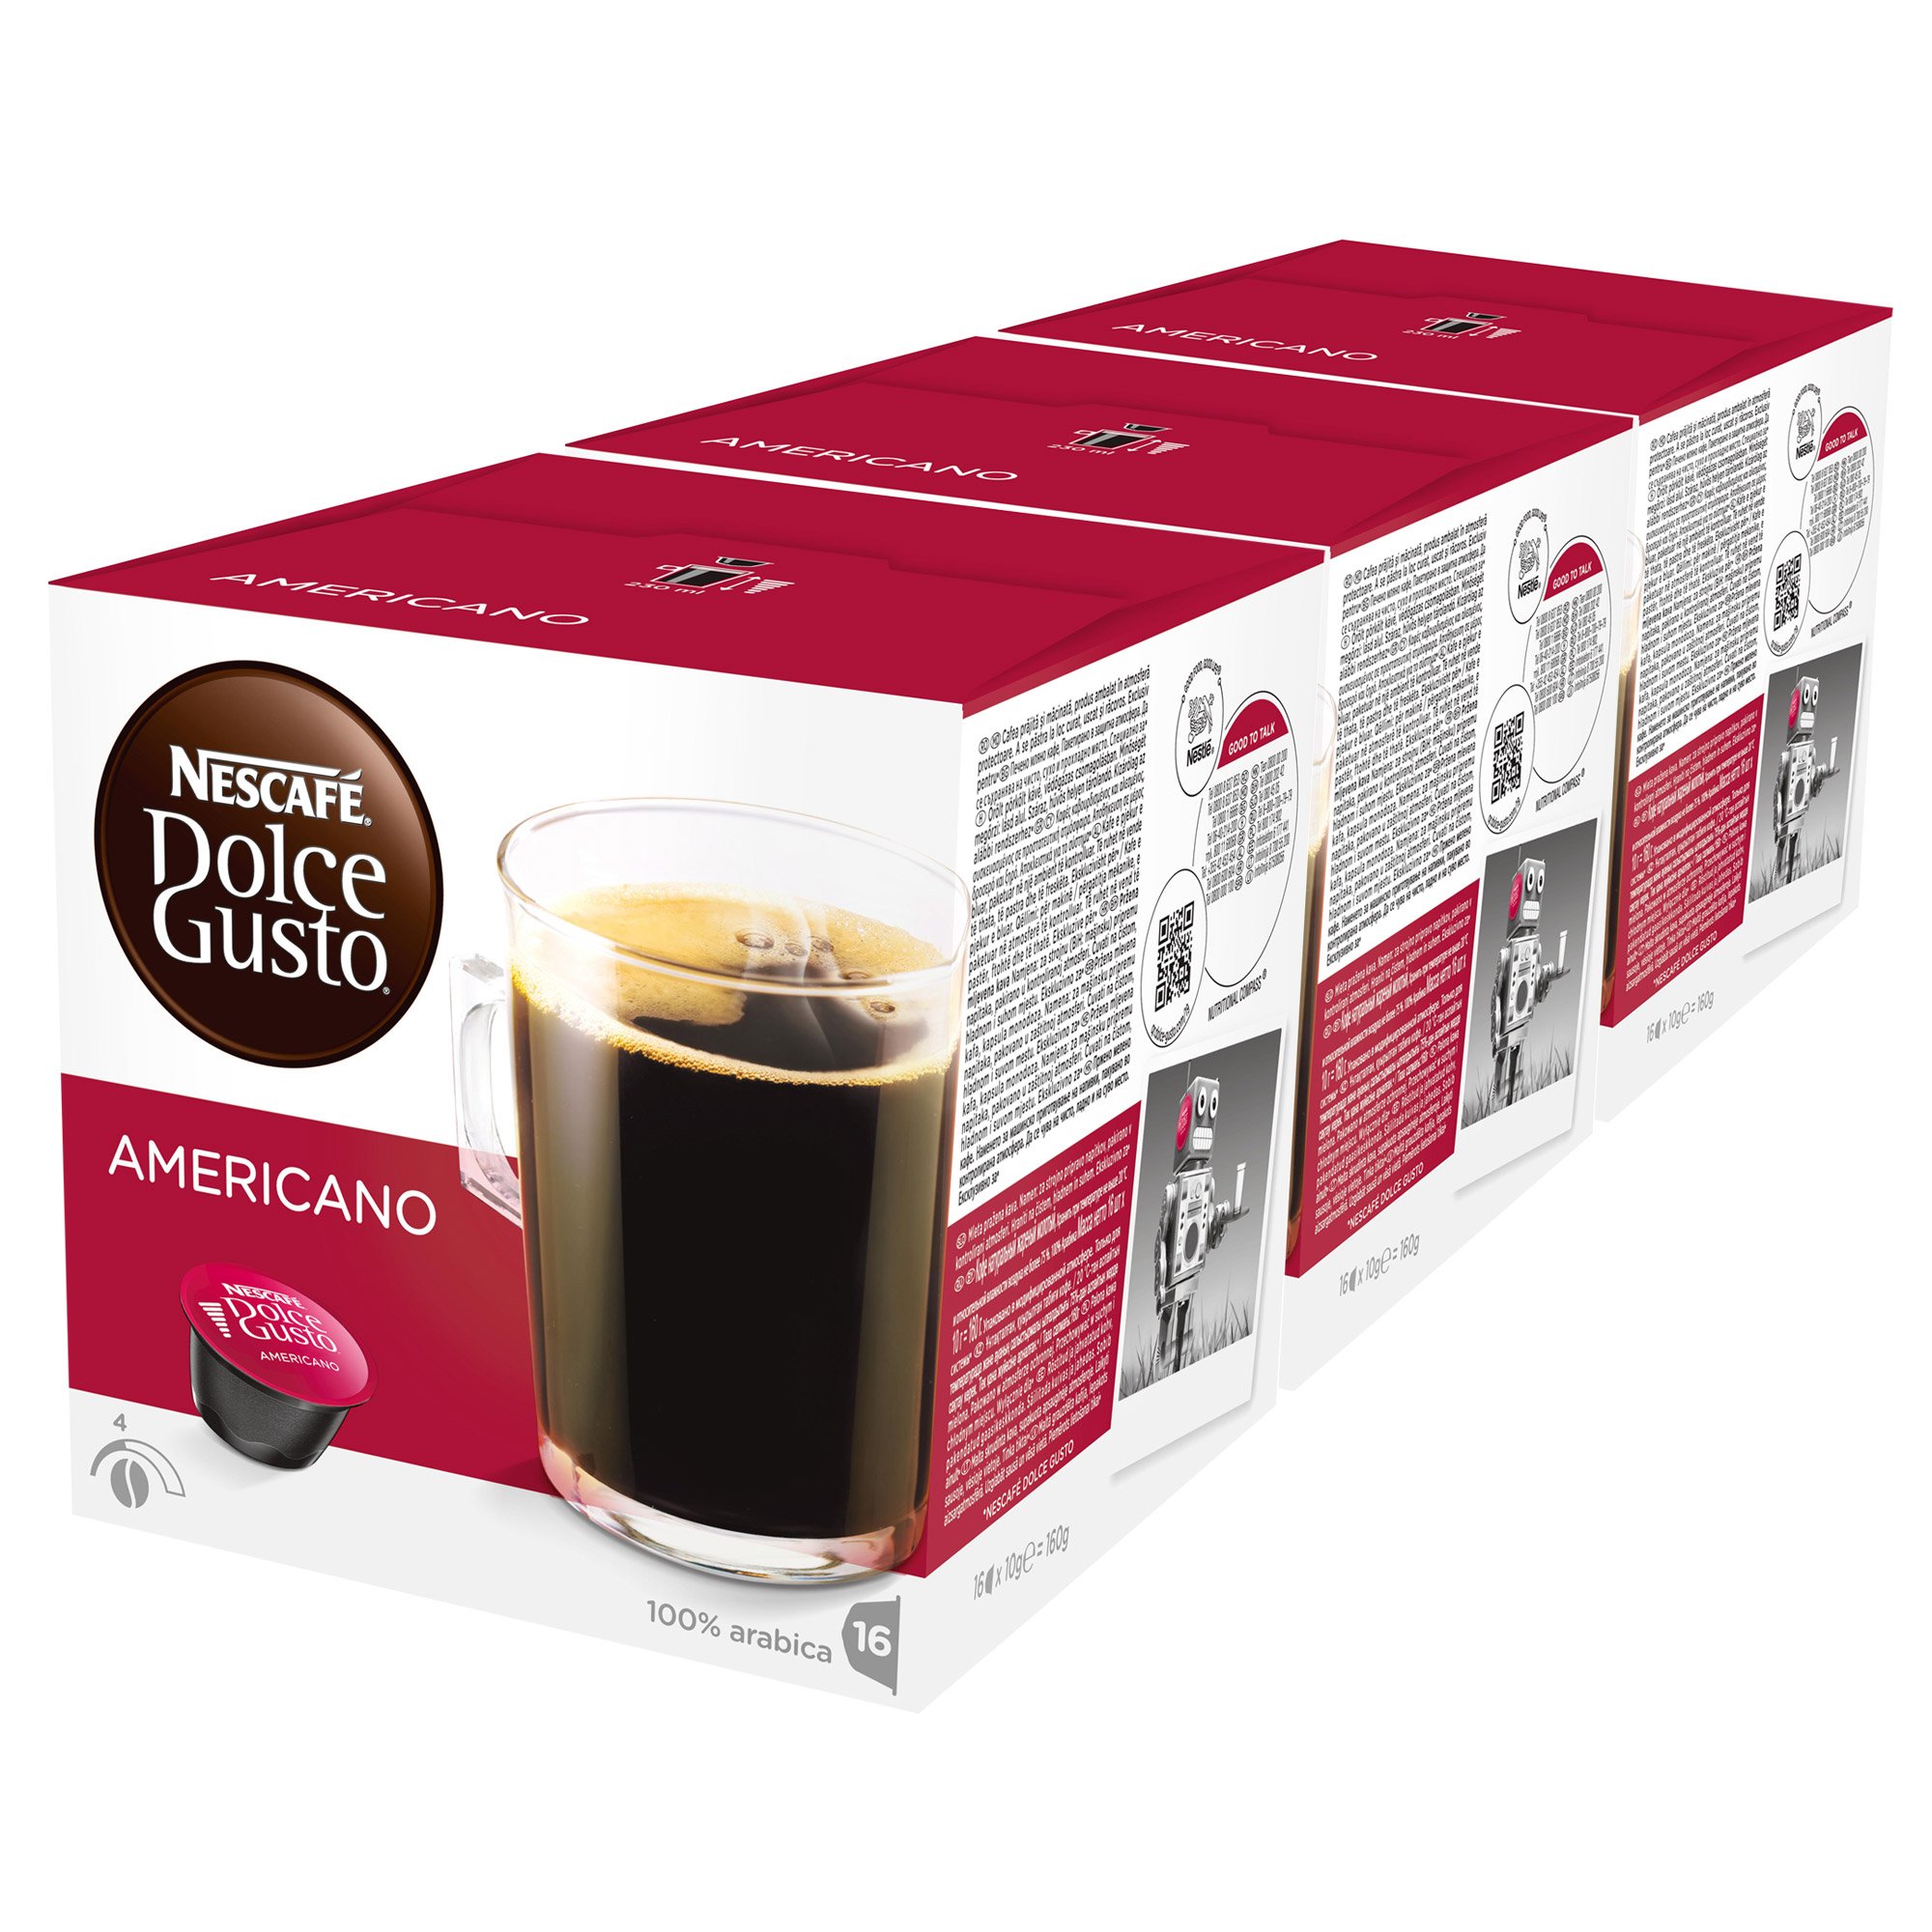 Nescafé Dolce Gusto Caffè Americano, Kaffee, Kaffeekapsel, 3er Pack, 3 x 16 Kapseln